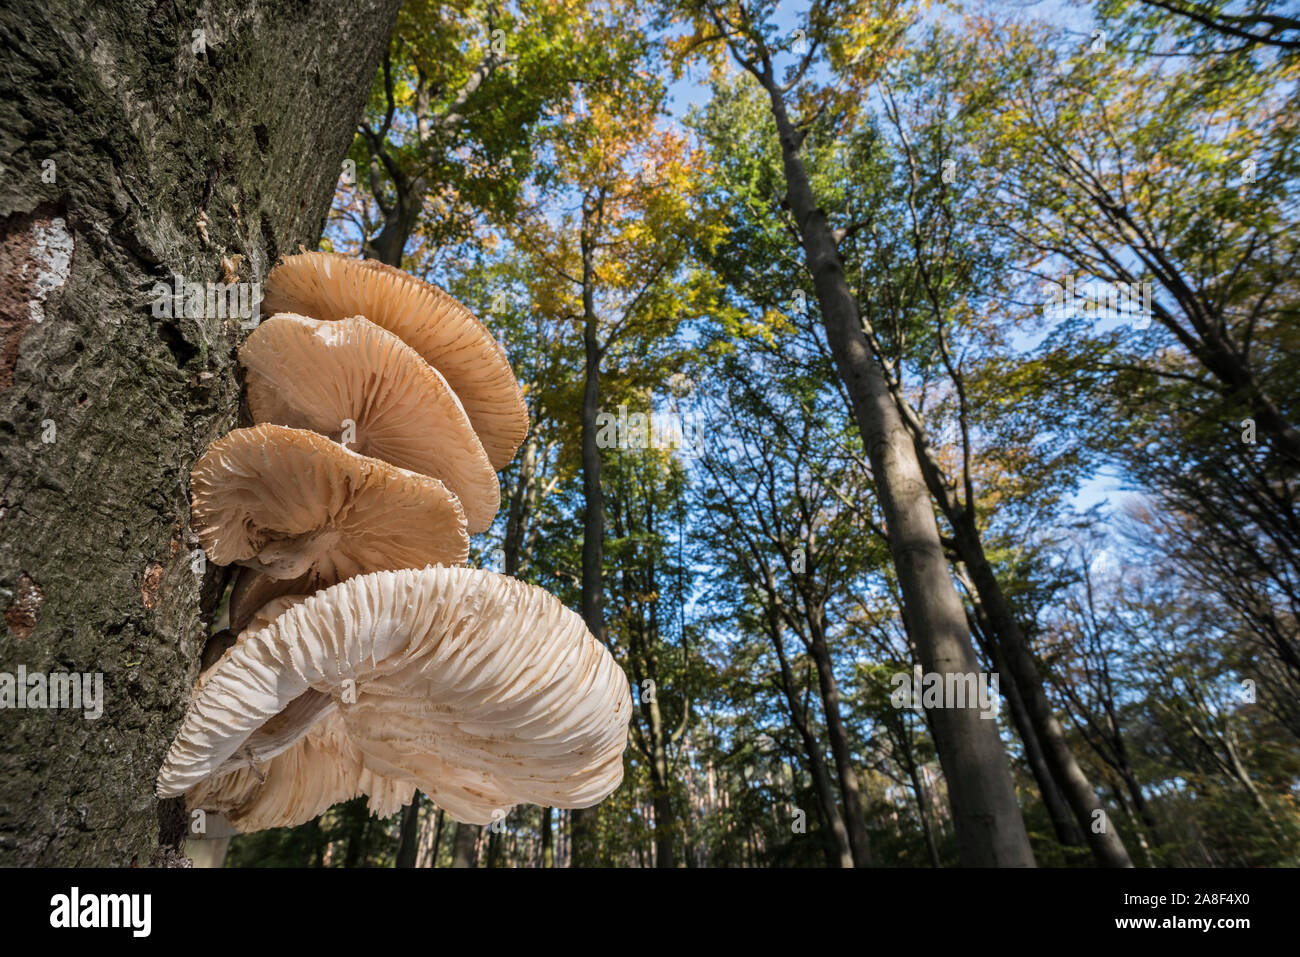 Clúster de porcelana (hongos Oudemansiella mucida / Collybia mucida) en el tronco del árbol en el bosque de otoño mostrando bajos Foto de stock